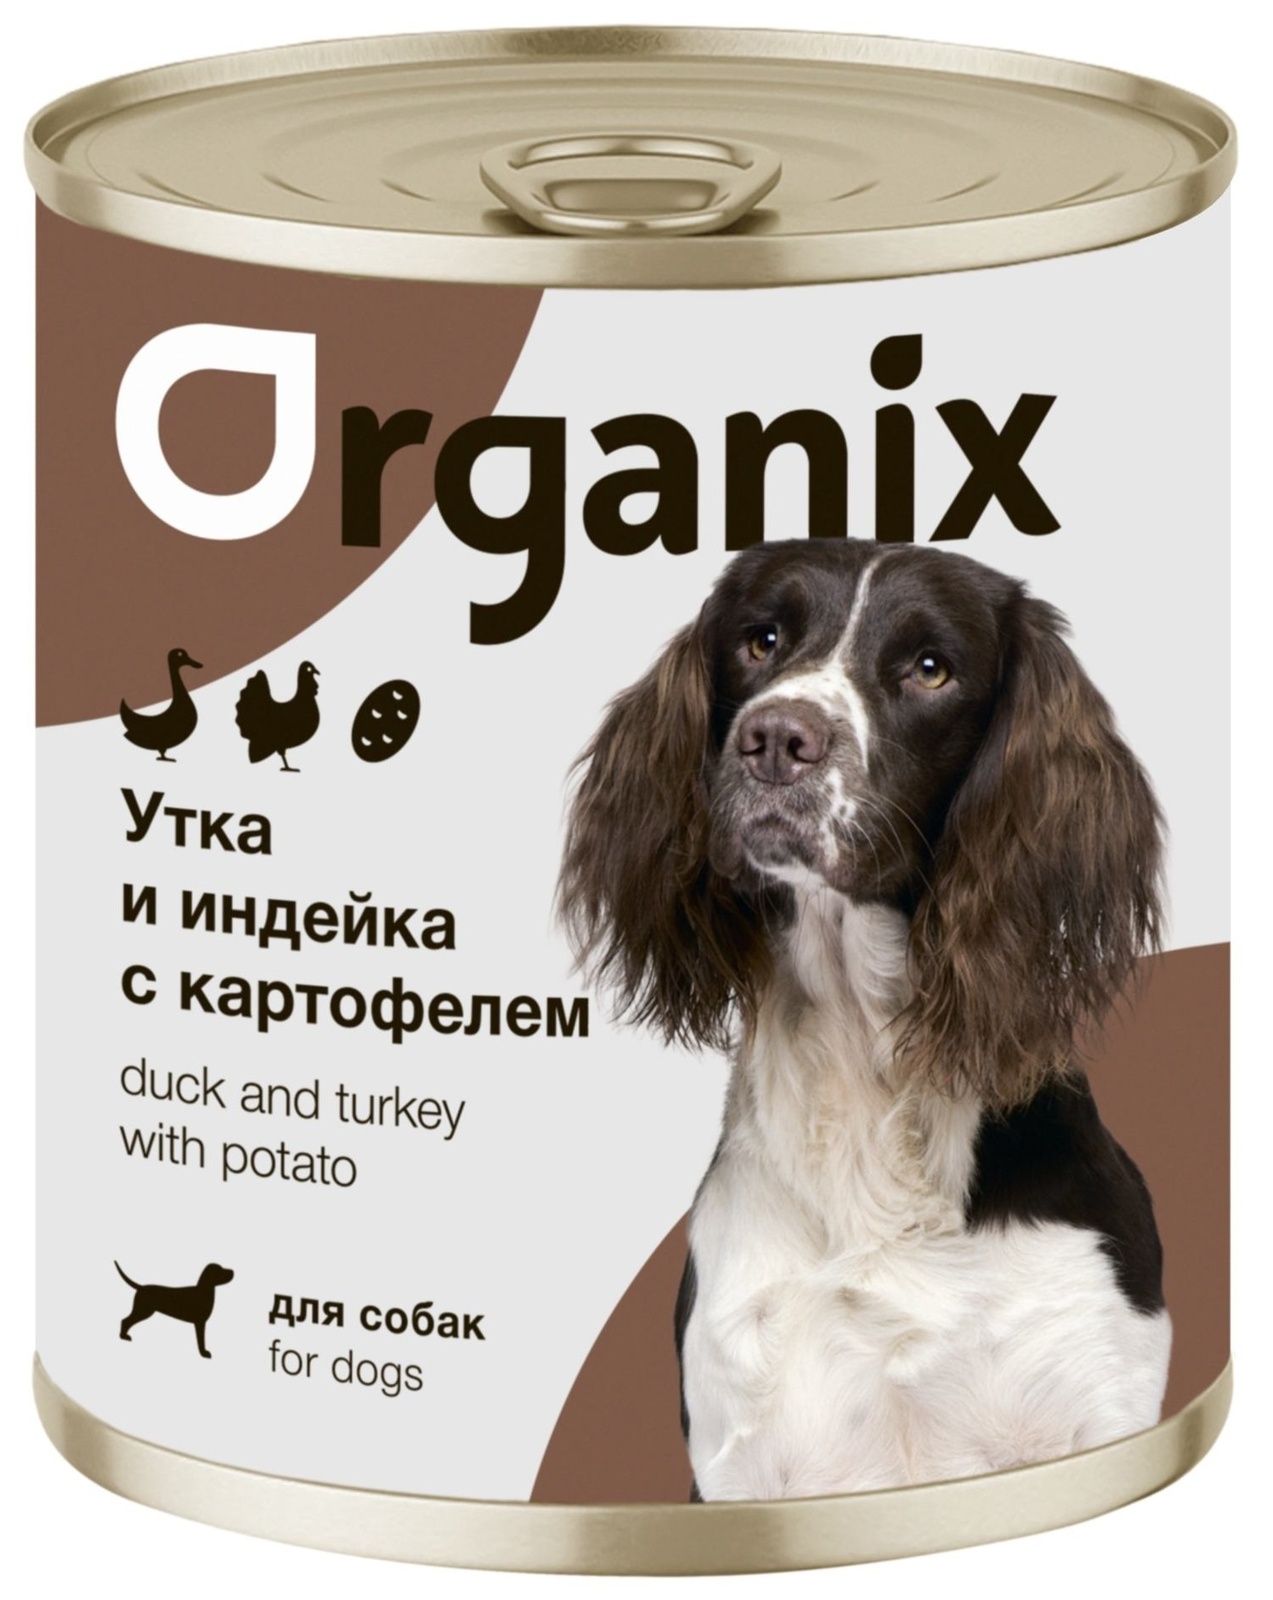 цена Organix консервы Organix консервы для собак Утка, индейка, картофель (400 г)